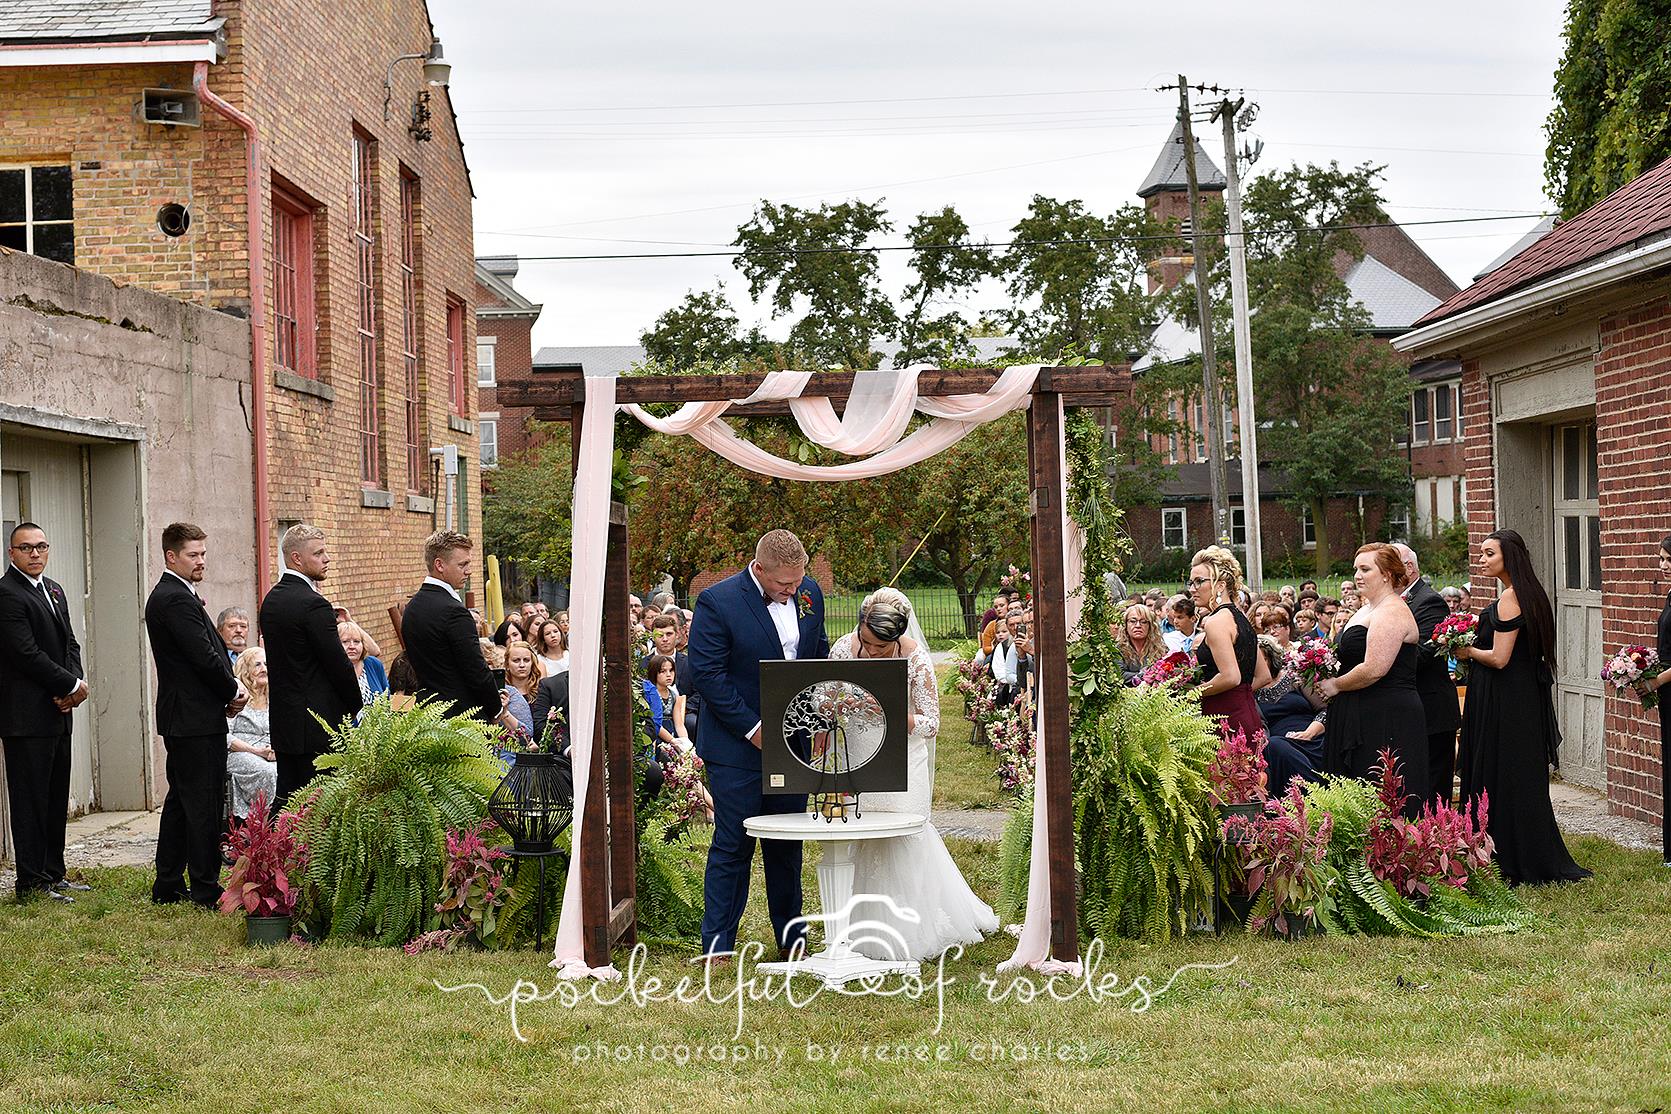 Sylvan Cellars Outdoor Wedding Ceremony